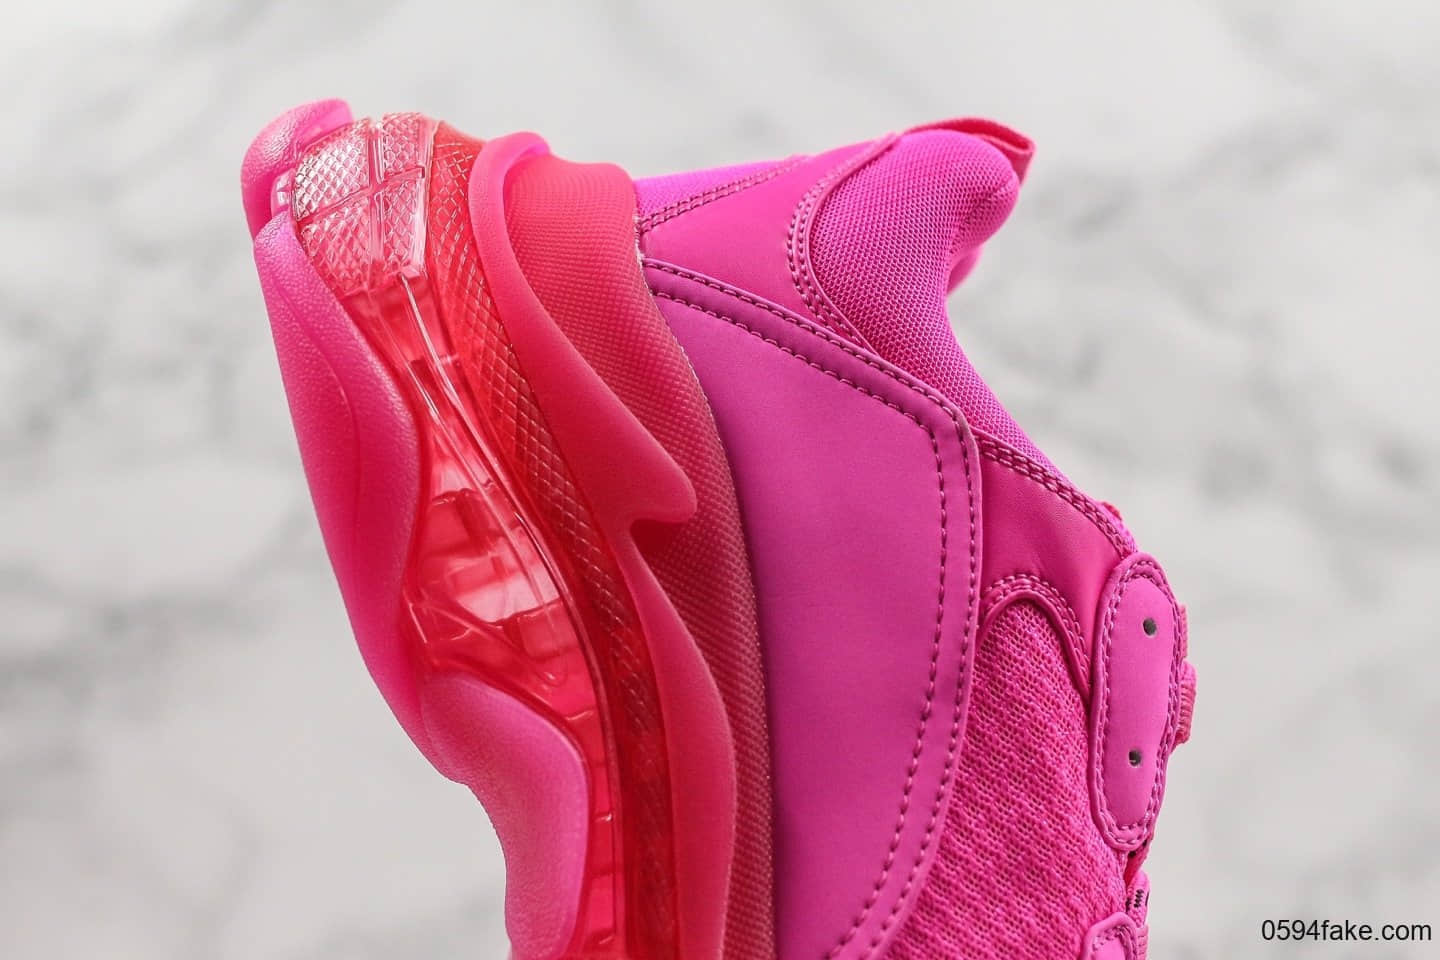 巴黎世家Balenciaga Triple S纯原版本官方全新发售配色玫粉色奢侈老爹鞋正确LOGO刺绣